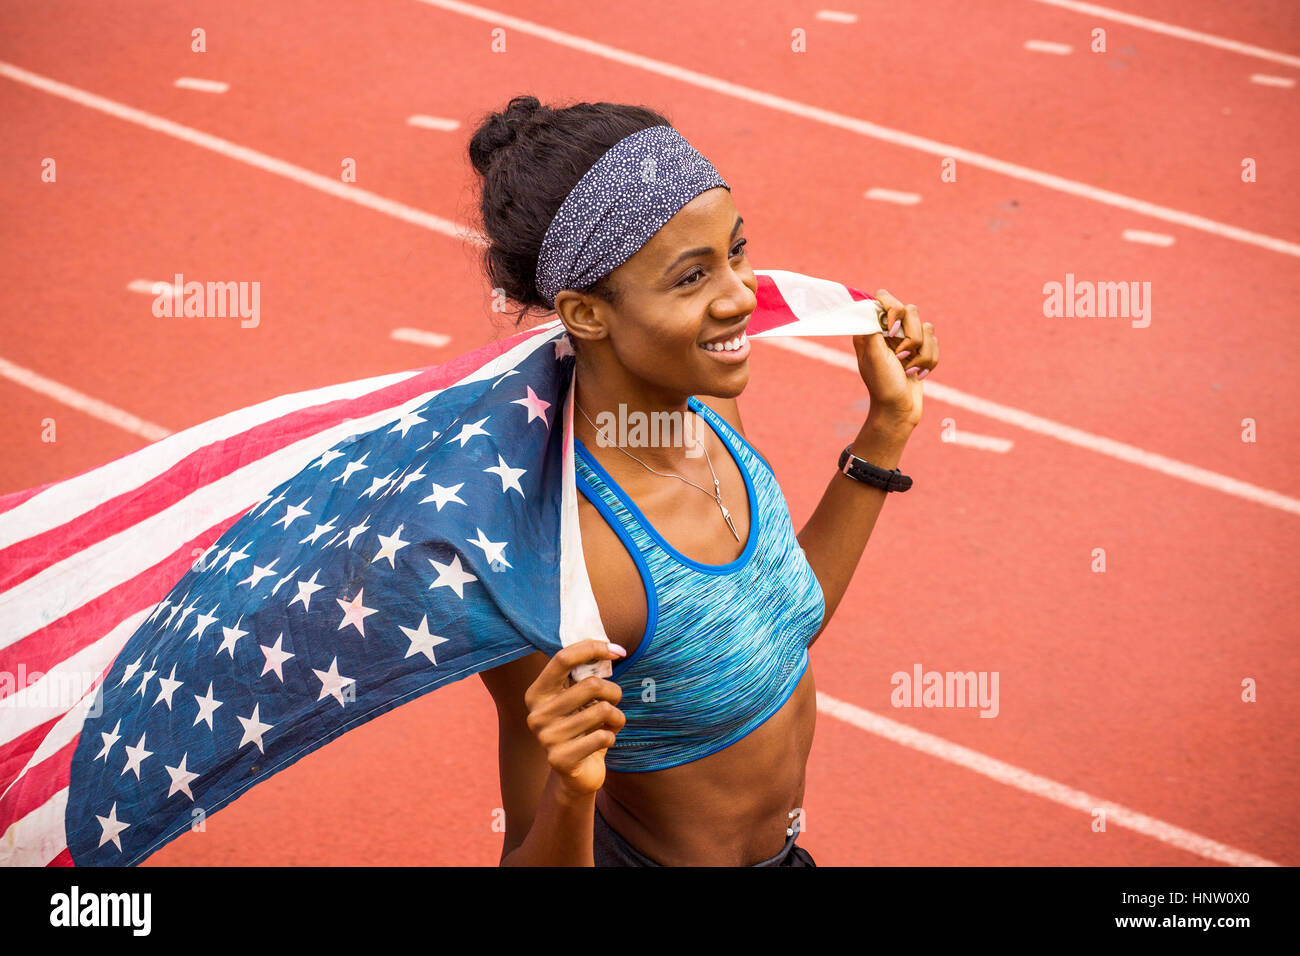 Smiling Black sportif holding drapeau américain sur la voie Banque D'Images